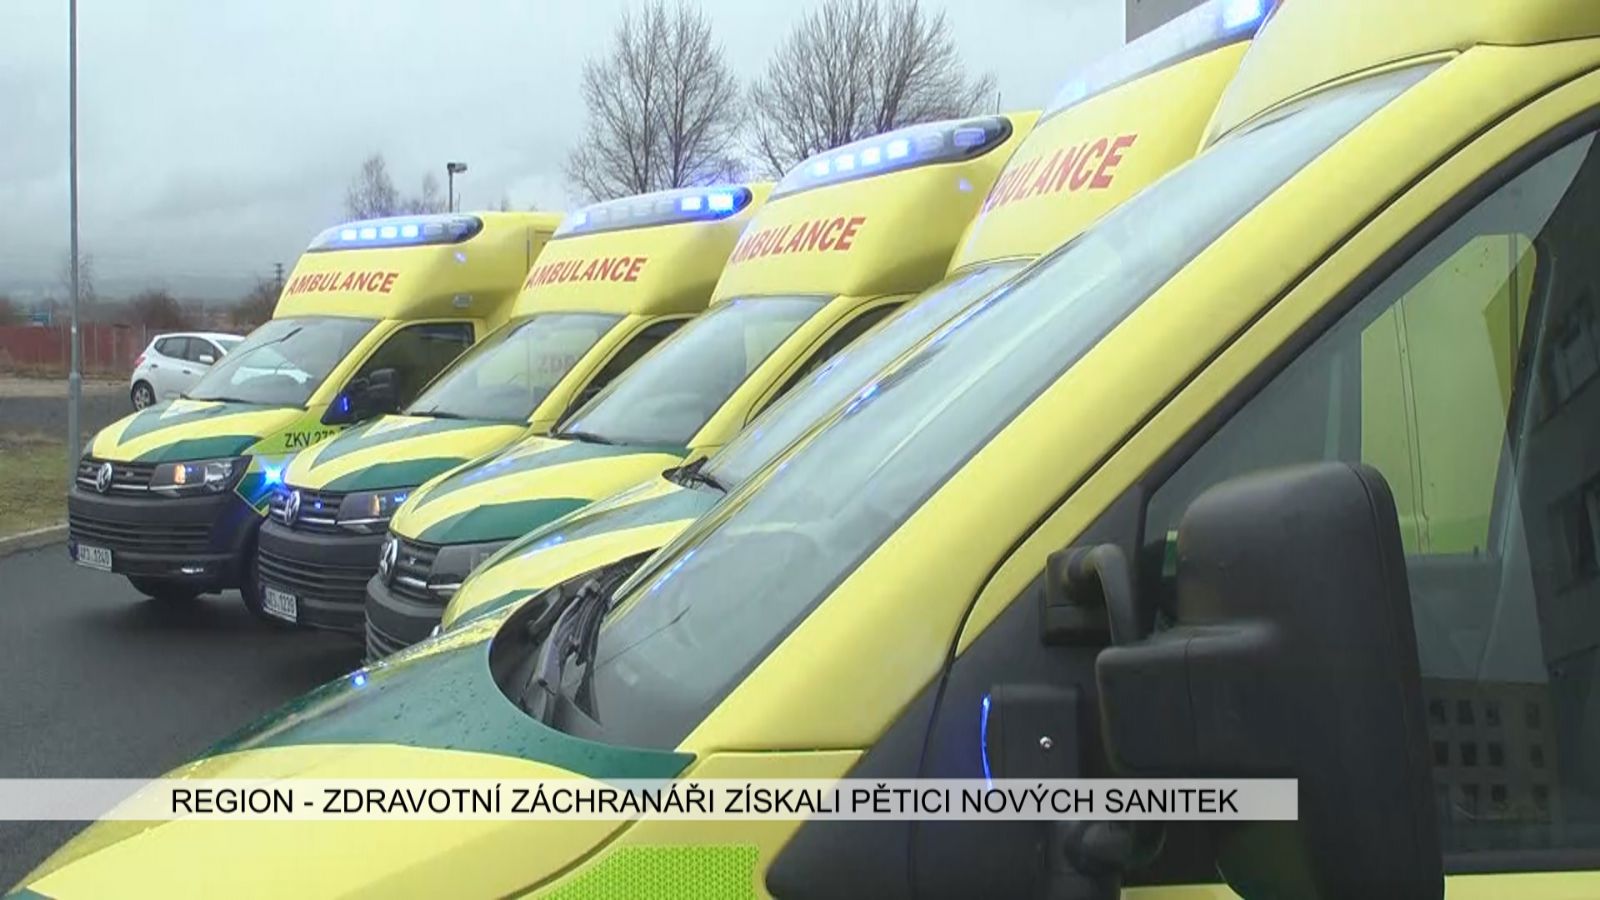 Region: Zdravotní záchranáři získali pětici nových sanitek za 15,2 milionu (TV Západ)